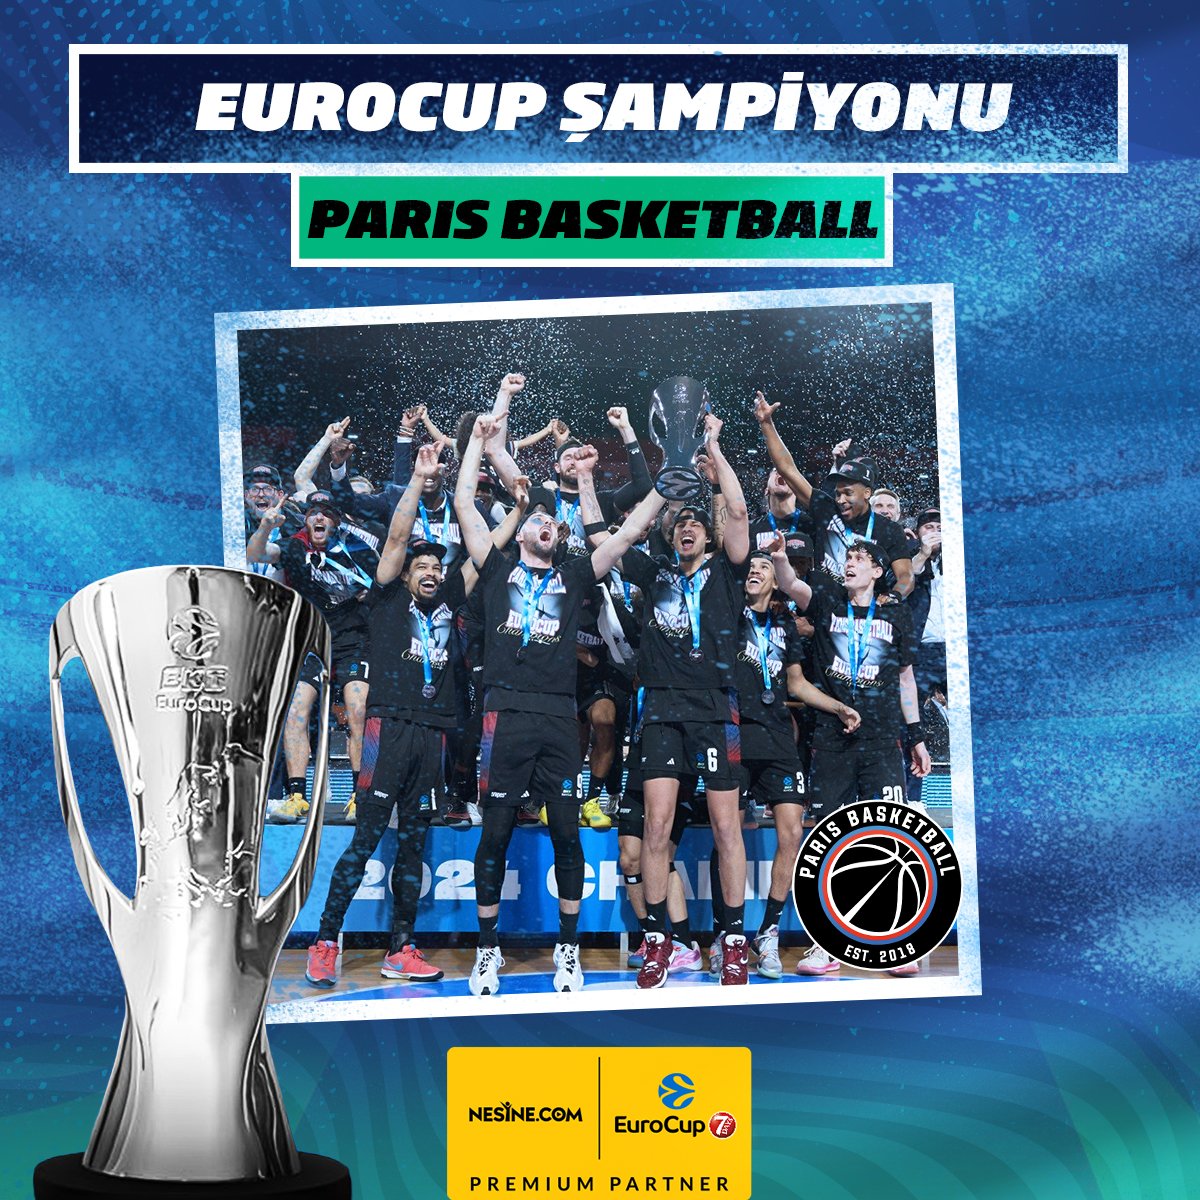 EUROCUP ŞAMPİYONU: PARIS BASKETBALL! 🏆 Bu şampiyonlukla birlikte Paris Basketball, Euroleague biletini de almış oldu.